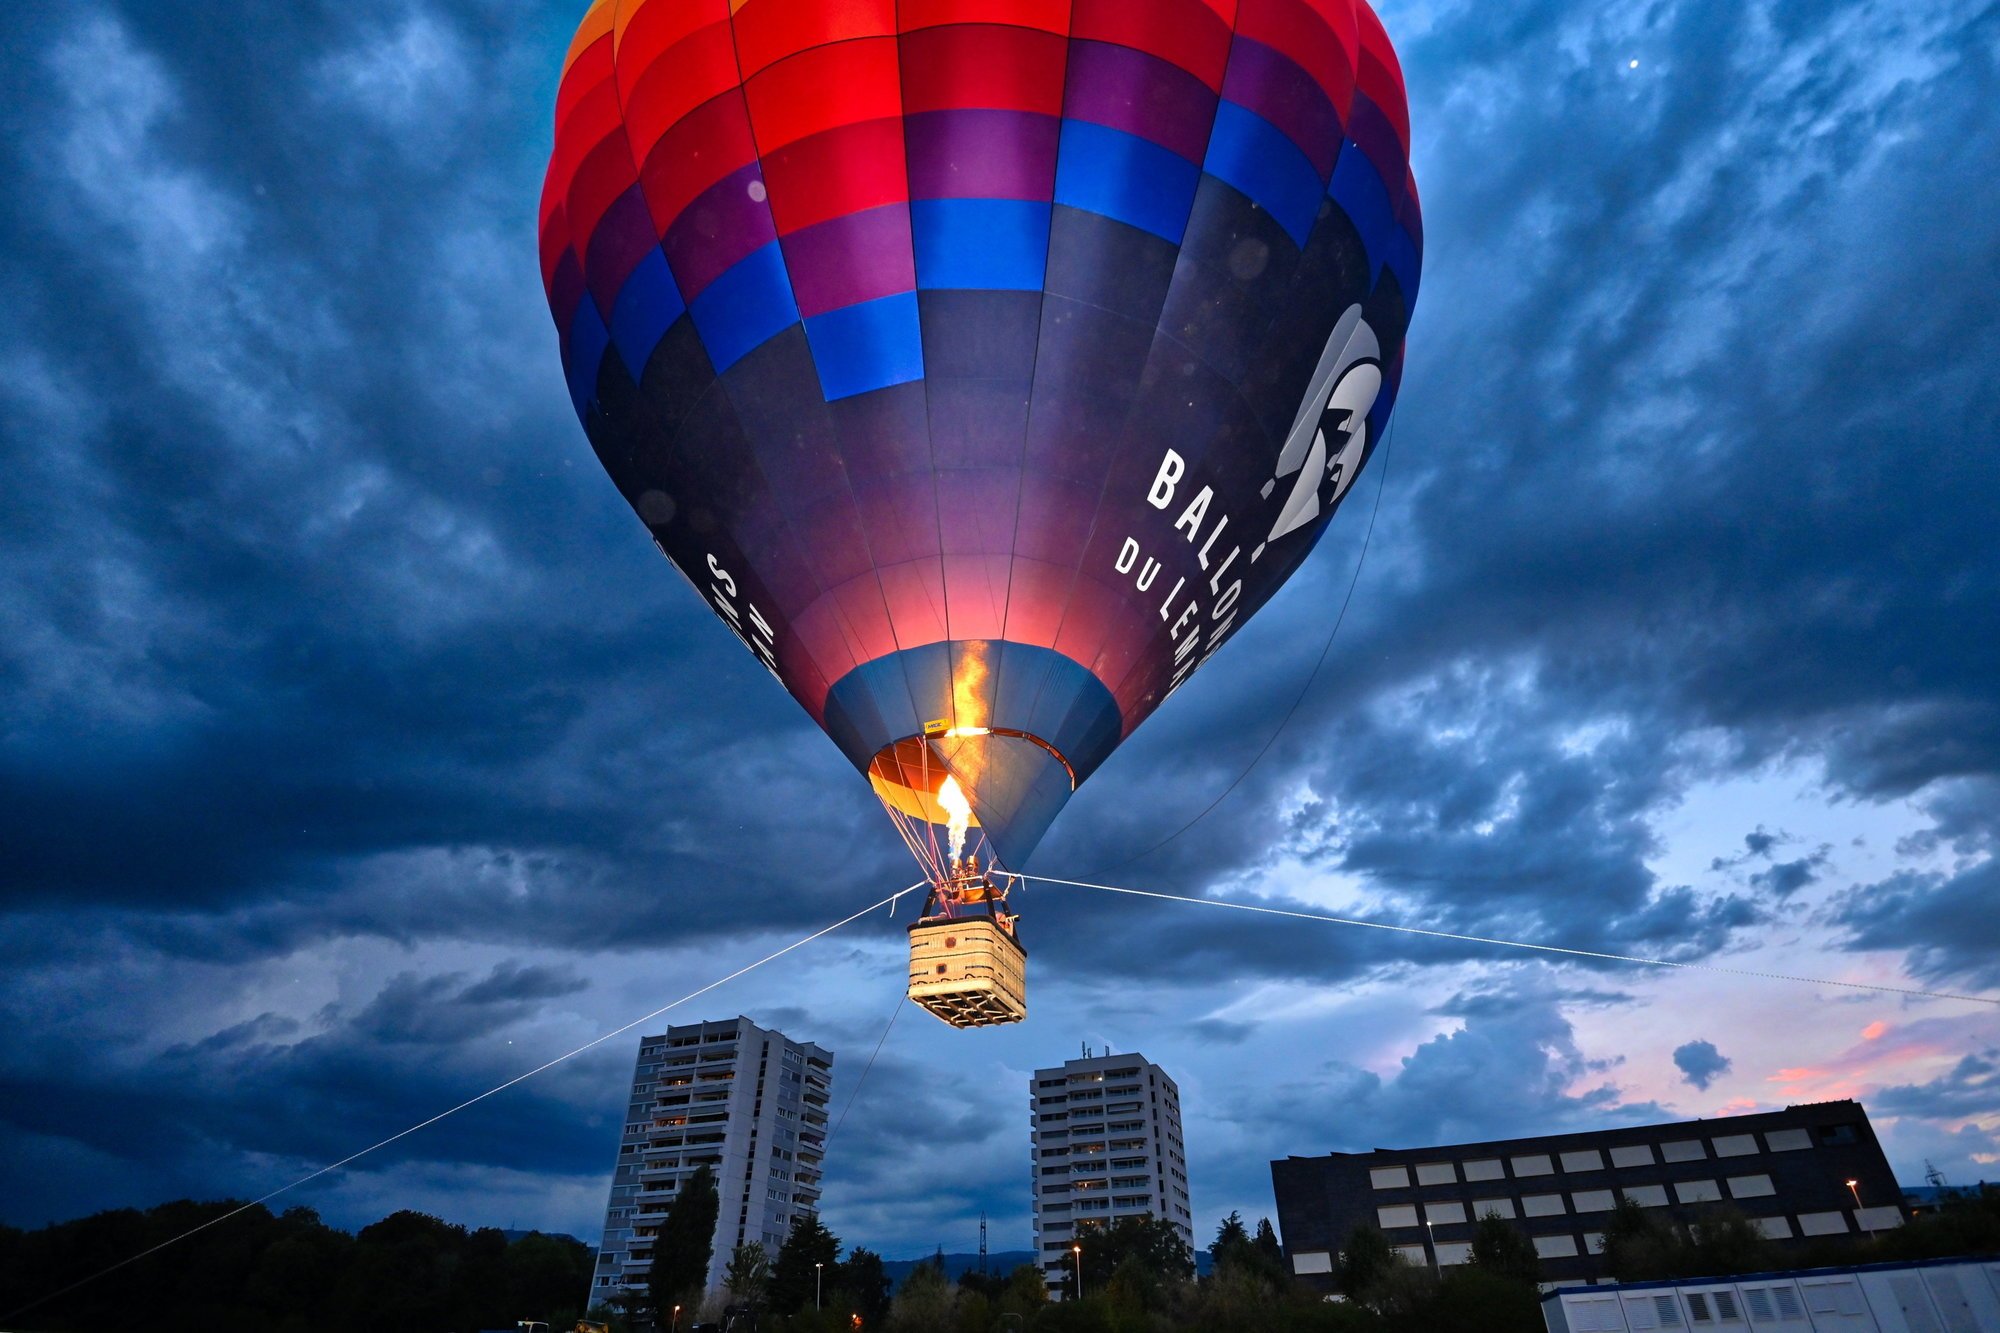 Après les montgolfières dans le ciel de Gland l'an dernier, la deuxième ville du district tentera encore une nouveauté en projetant des vidéos sur un ballon blanc hissé à 100 mètres au-dessus du sol.